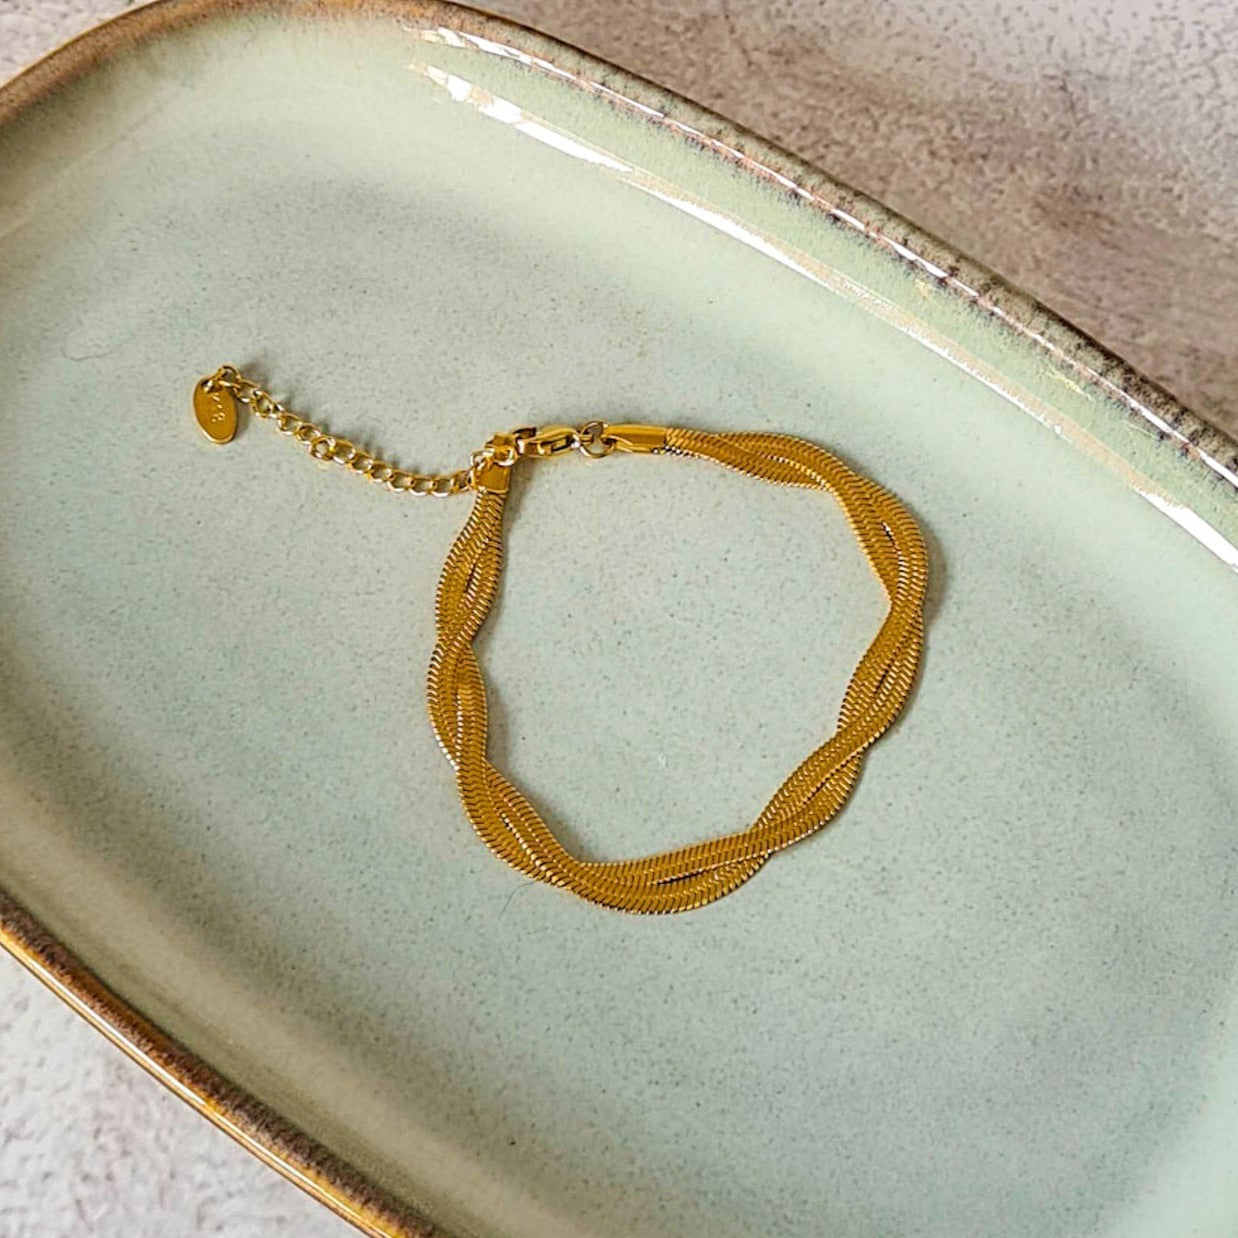 Gold tone double strand twisted flat snake bracelet